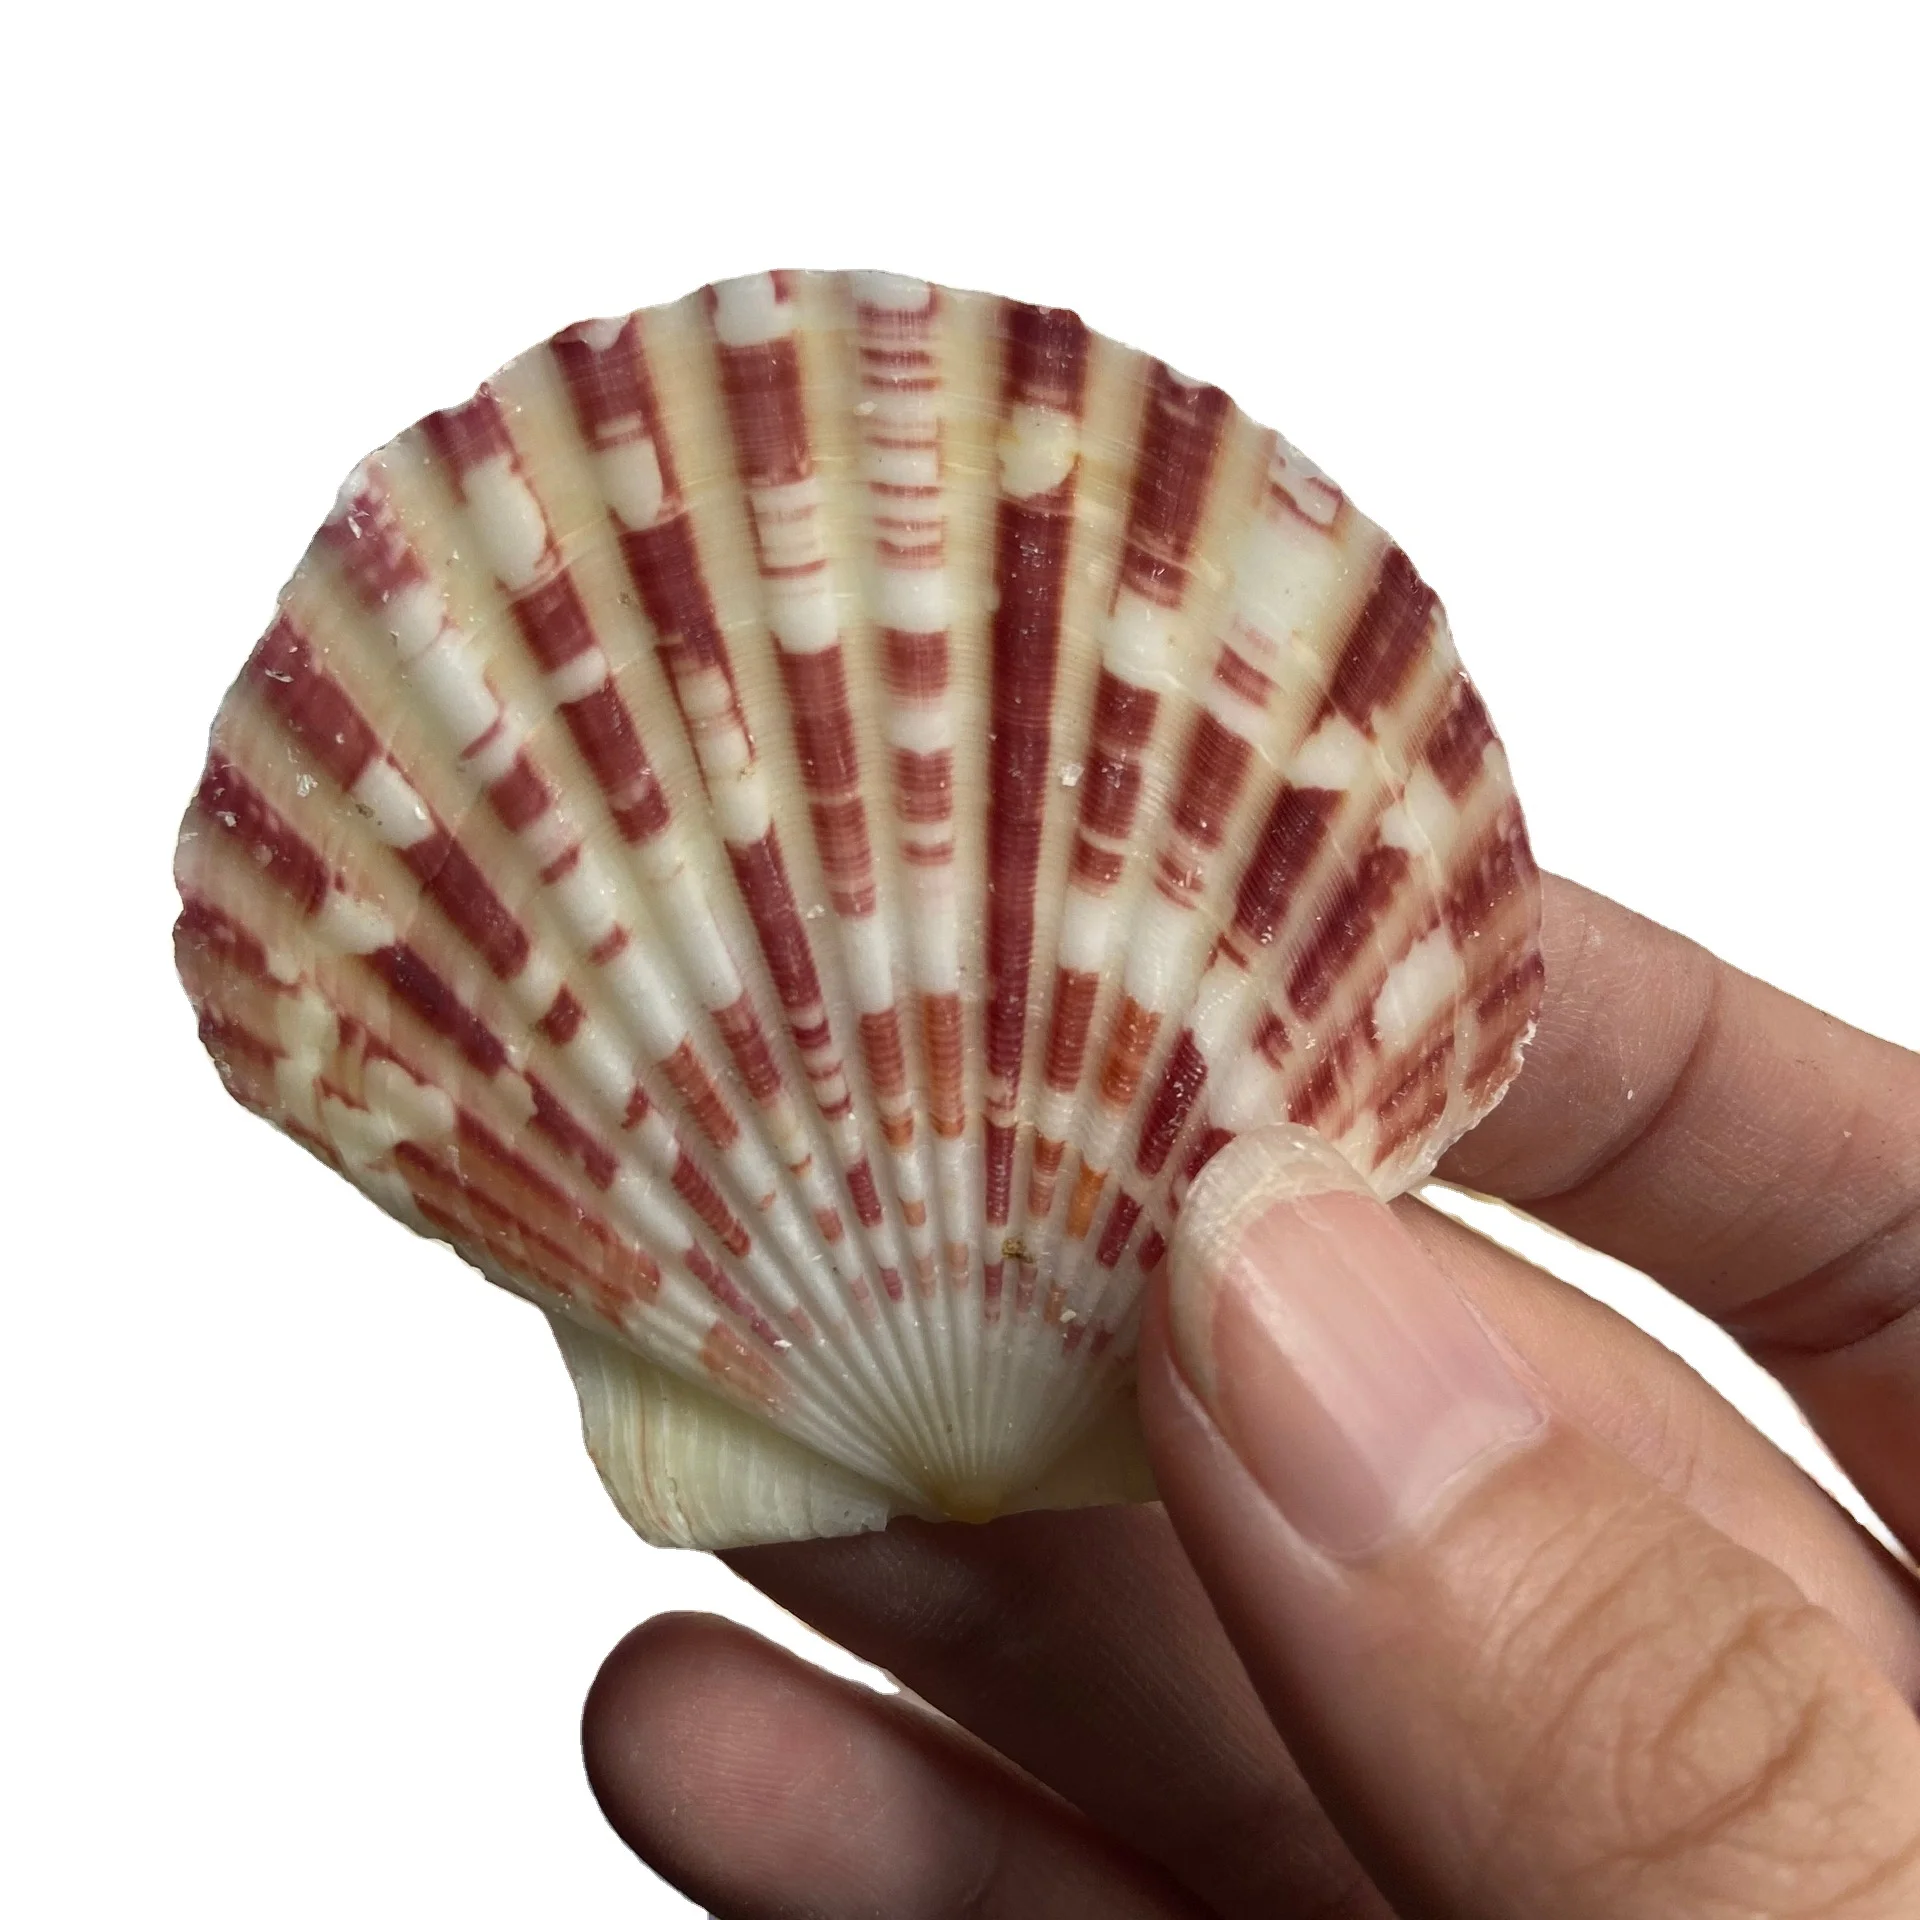 Shells for crafts - 24 Atlantic Ocean Gray scallop shells various